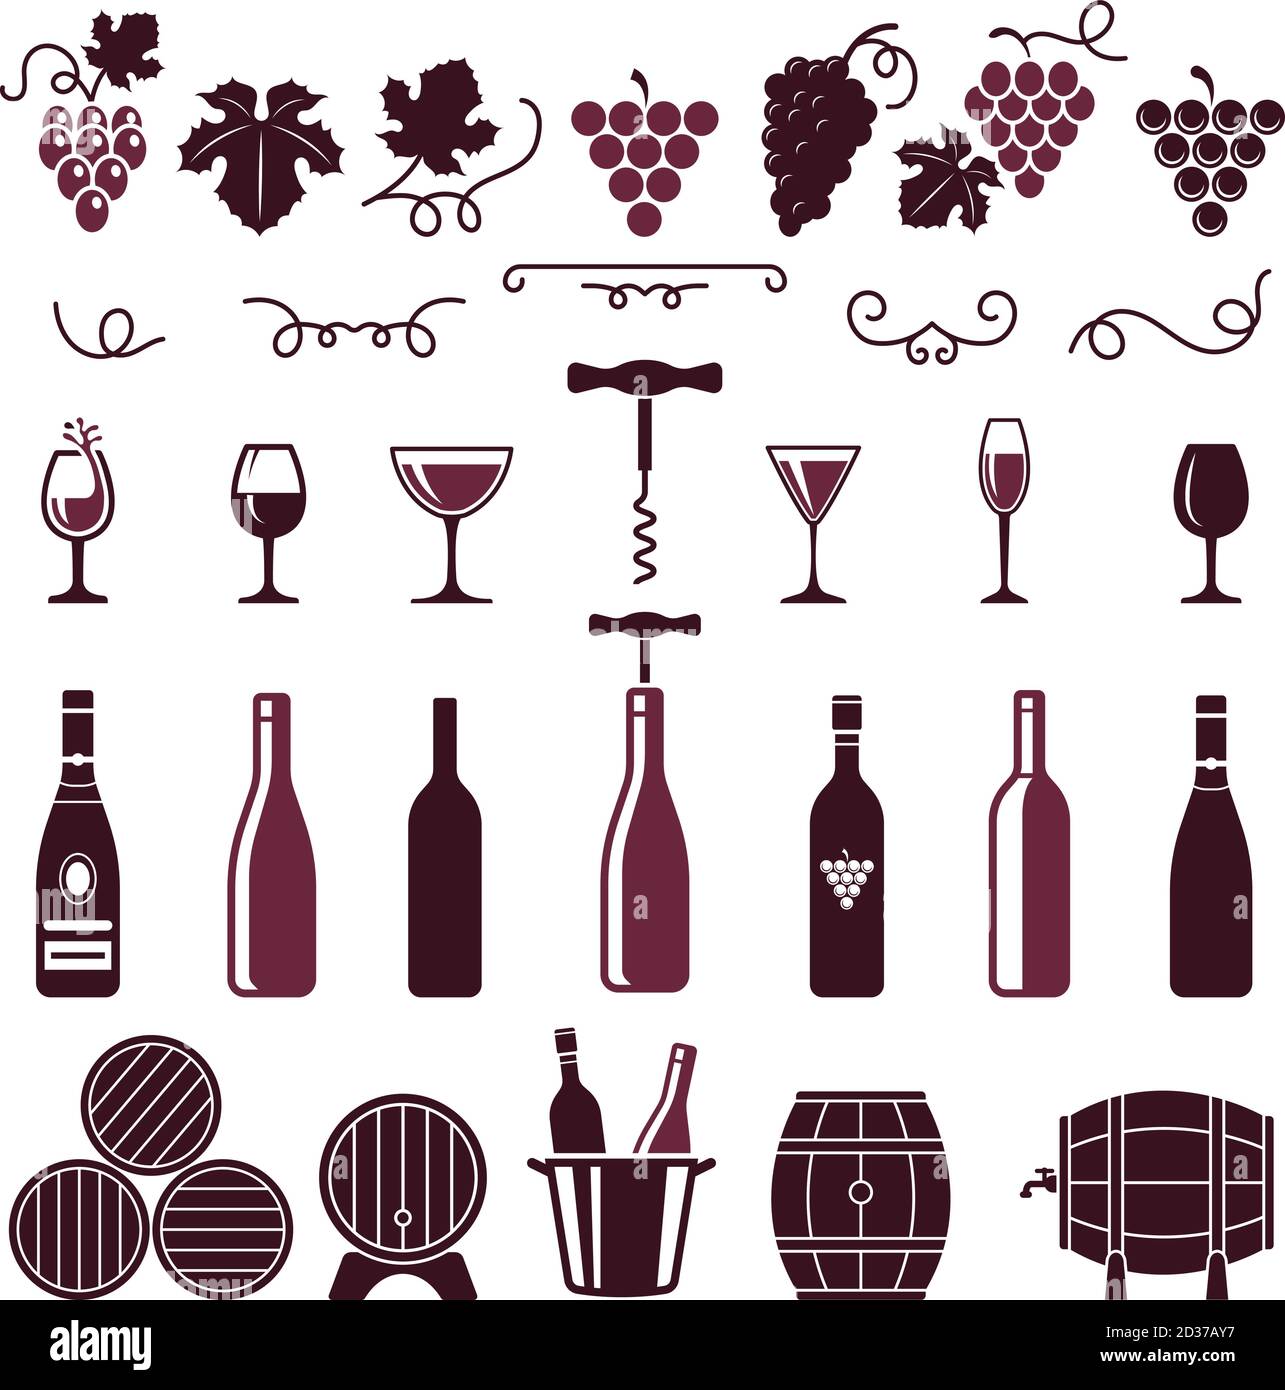 Symboles de vin. Feuilles de raisin tendrils de vigne bouteilles barriques corkscrew vector stylisé images pour étiquettes ou logo design Illustration de Vecteur